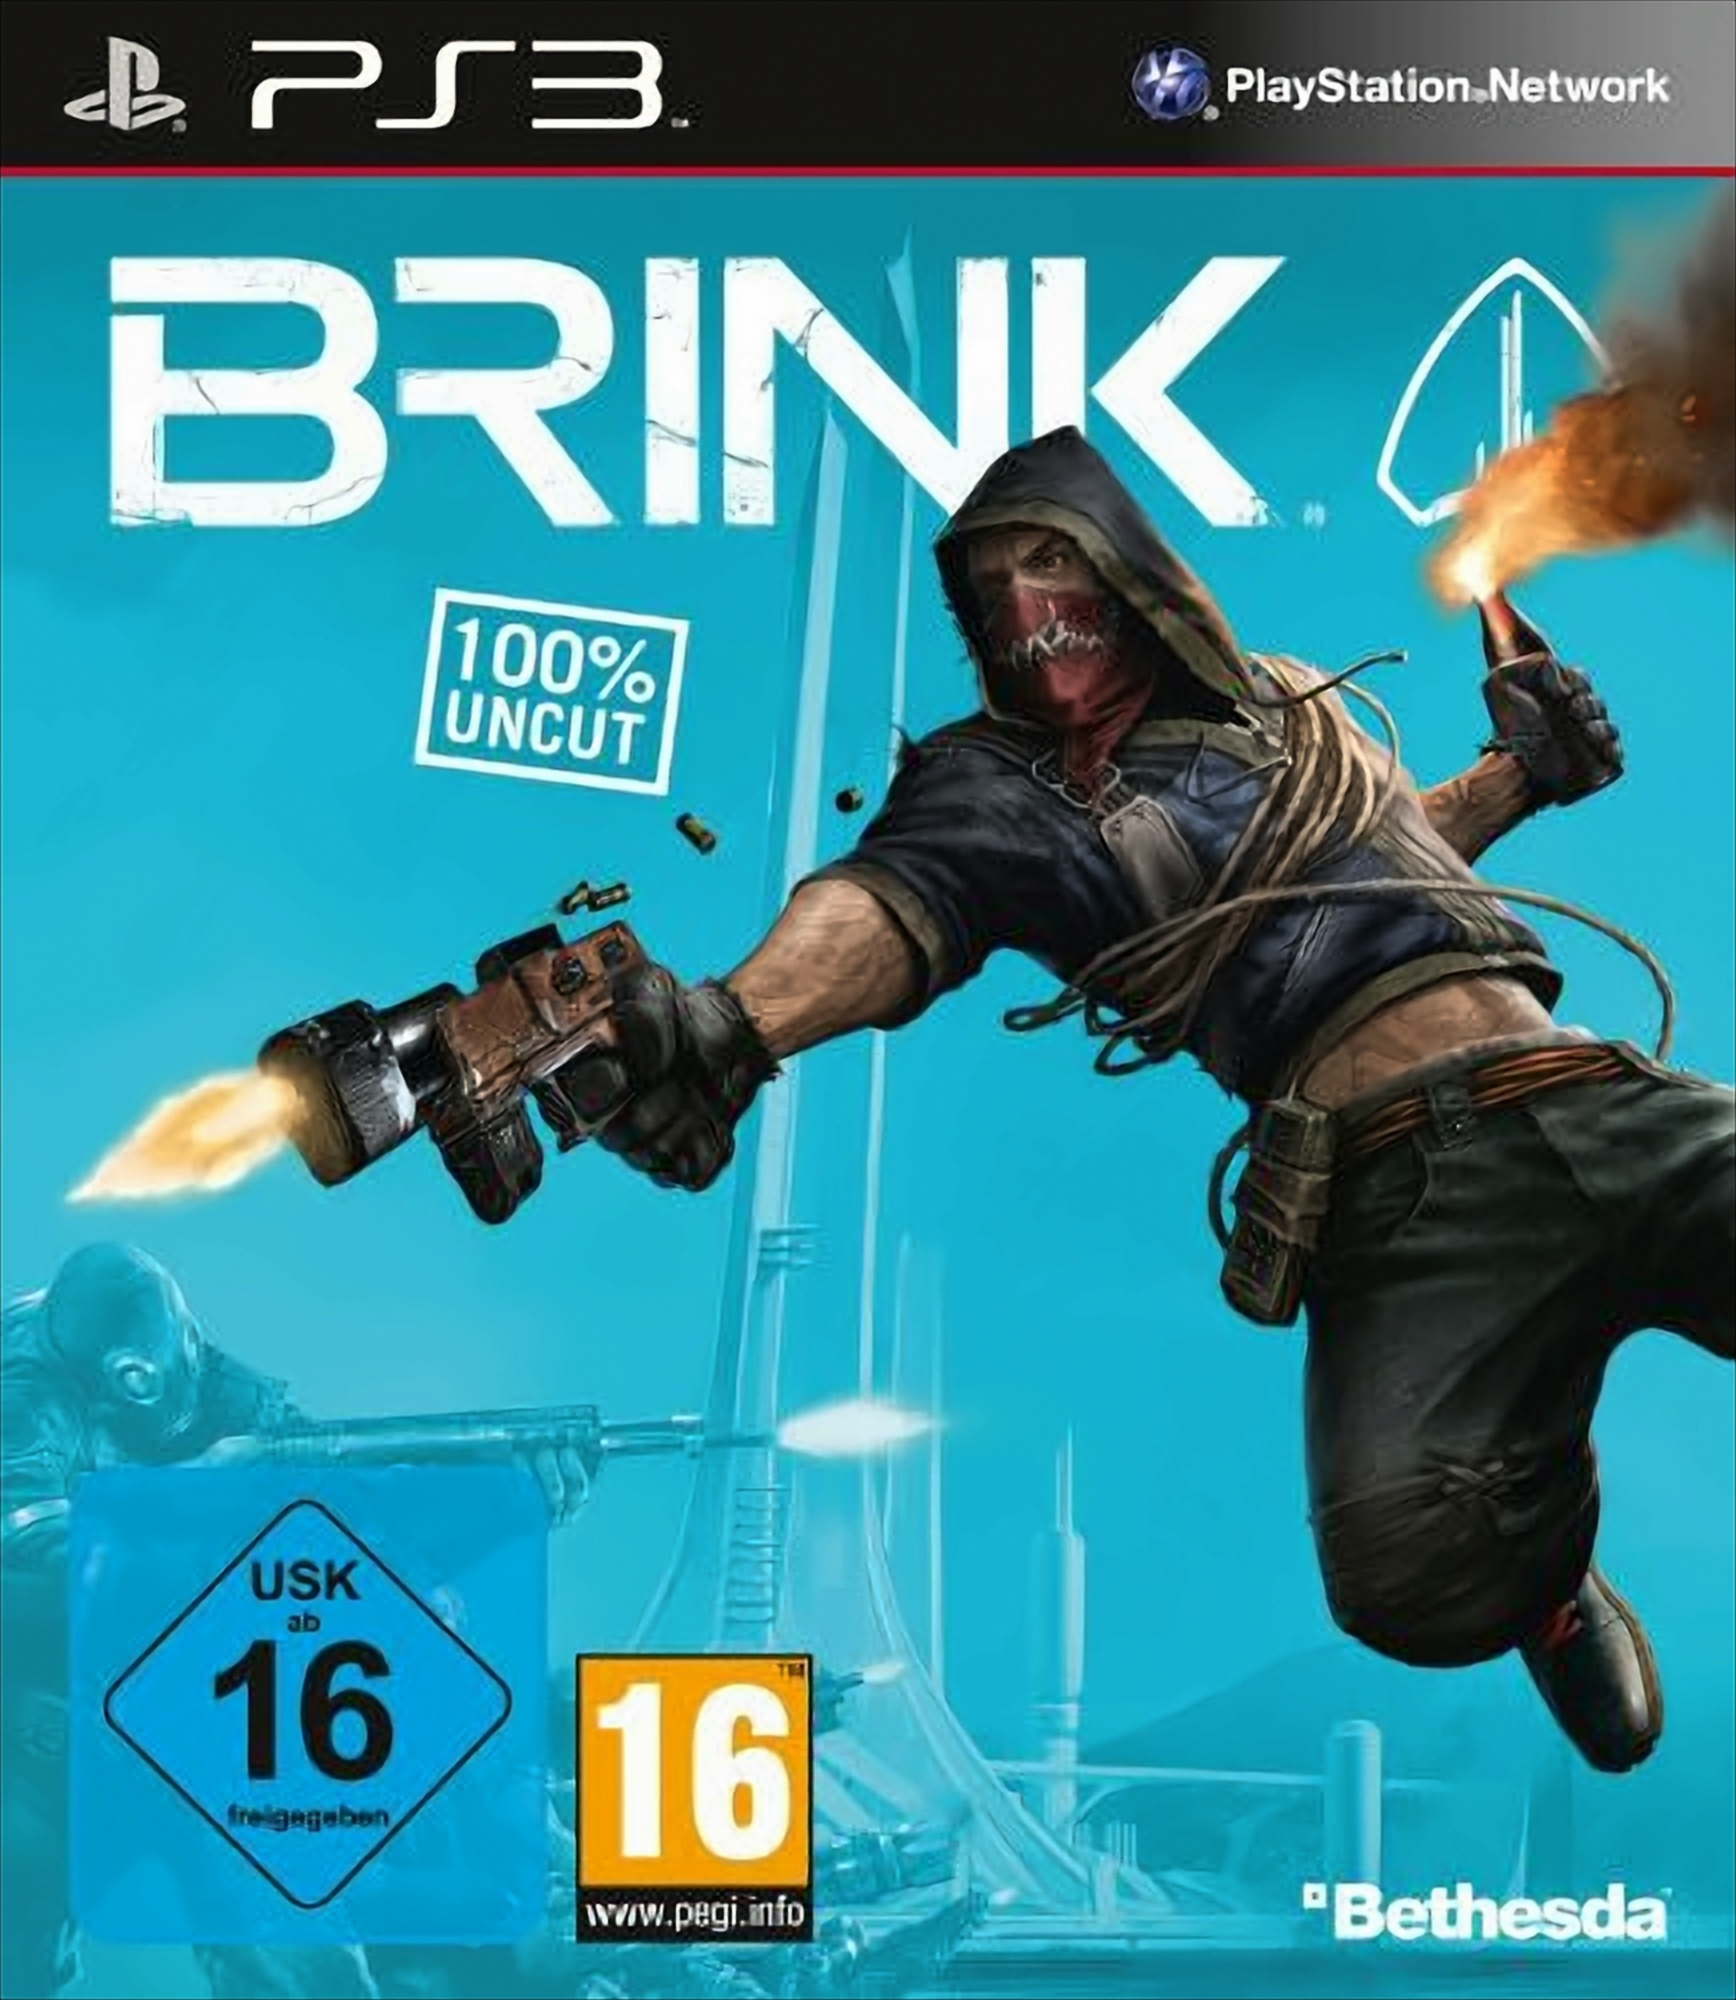 Brink - 100% uncut 3] - [PlayStation